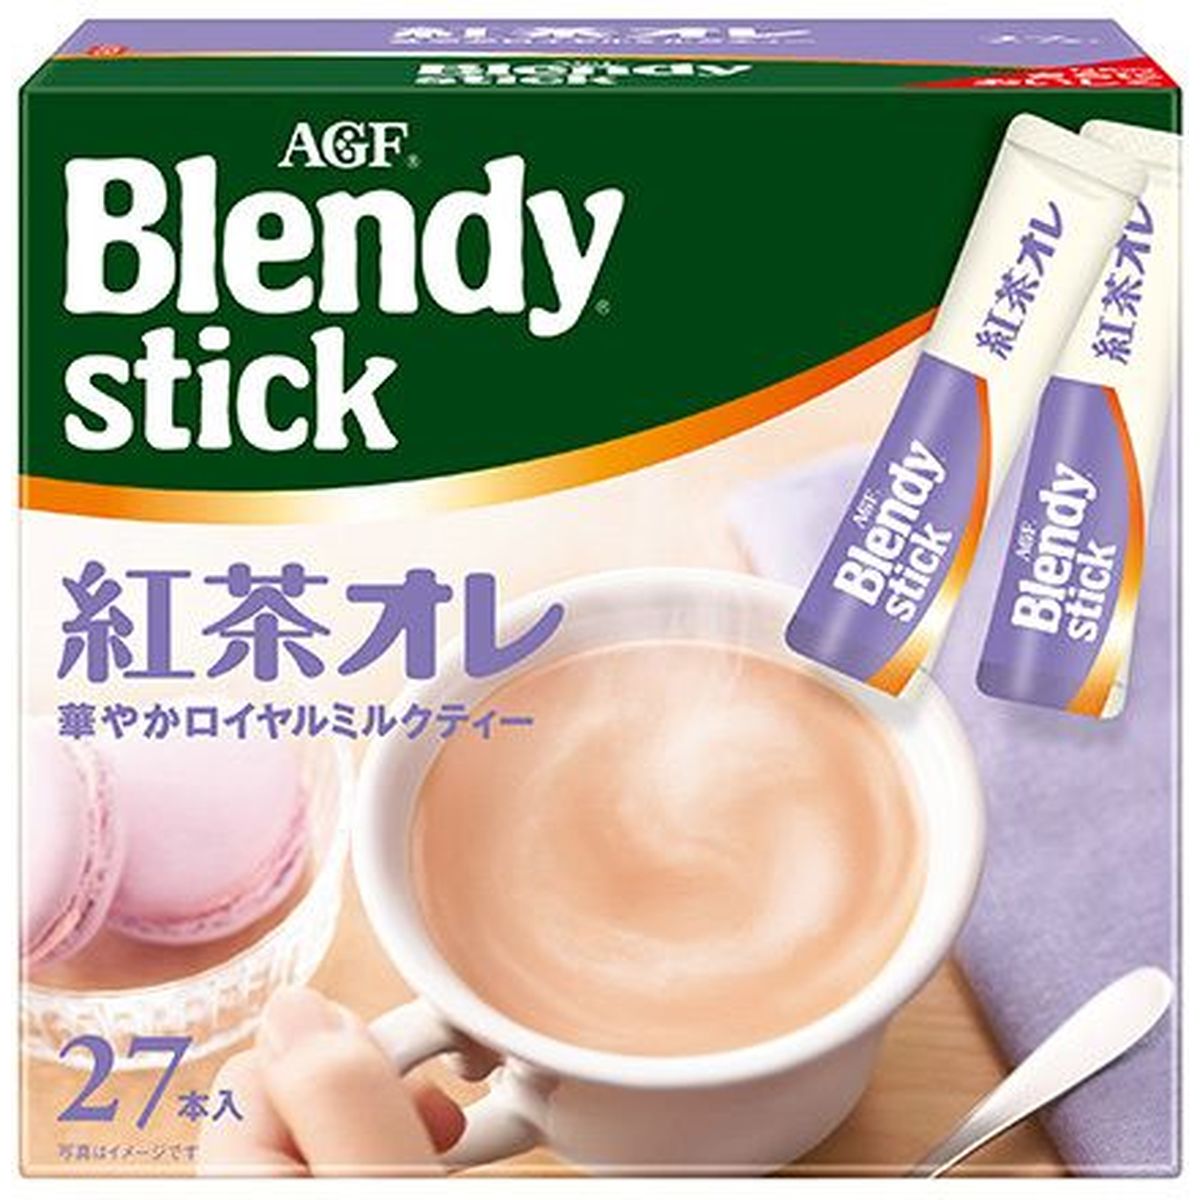 【3個入リ】AGF ブレンディスティック 紅茶オレ 27本